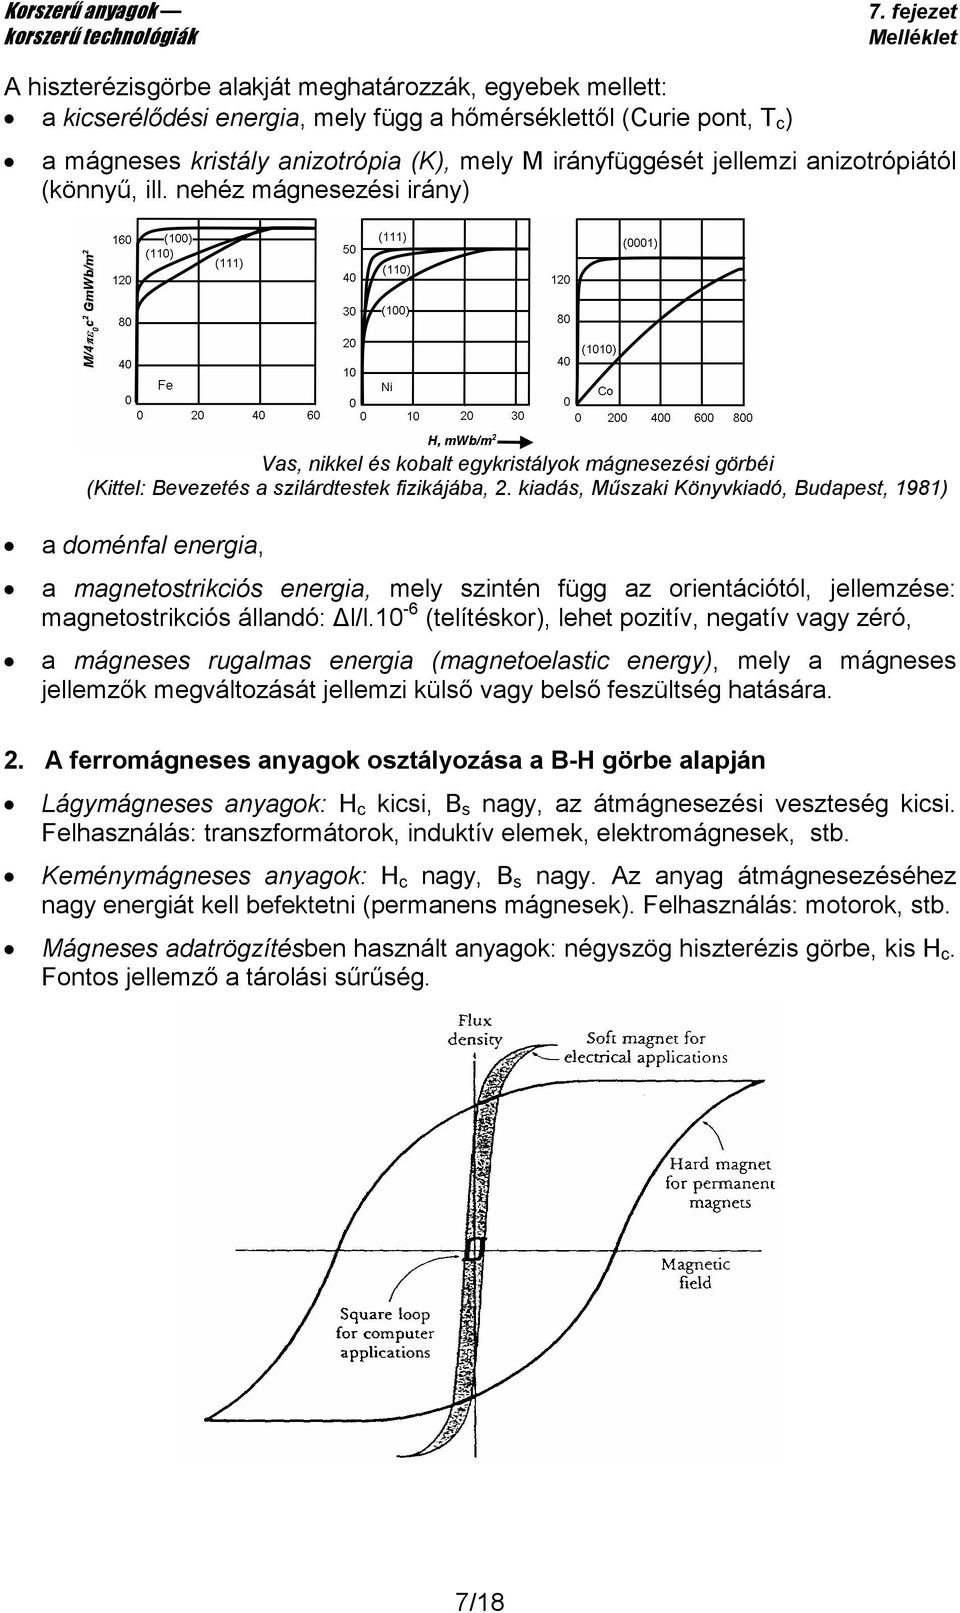 kiadás, Műszaki Könyvkiadó, Budapest, 1981) a doménfal energia, a magnetostrikciós energia, mely szintén függ az orientációtól, jellemzése: magnetostrikciós állandó: l/l.